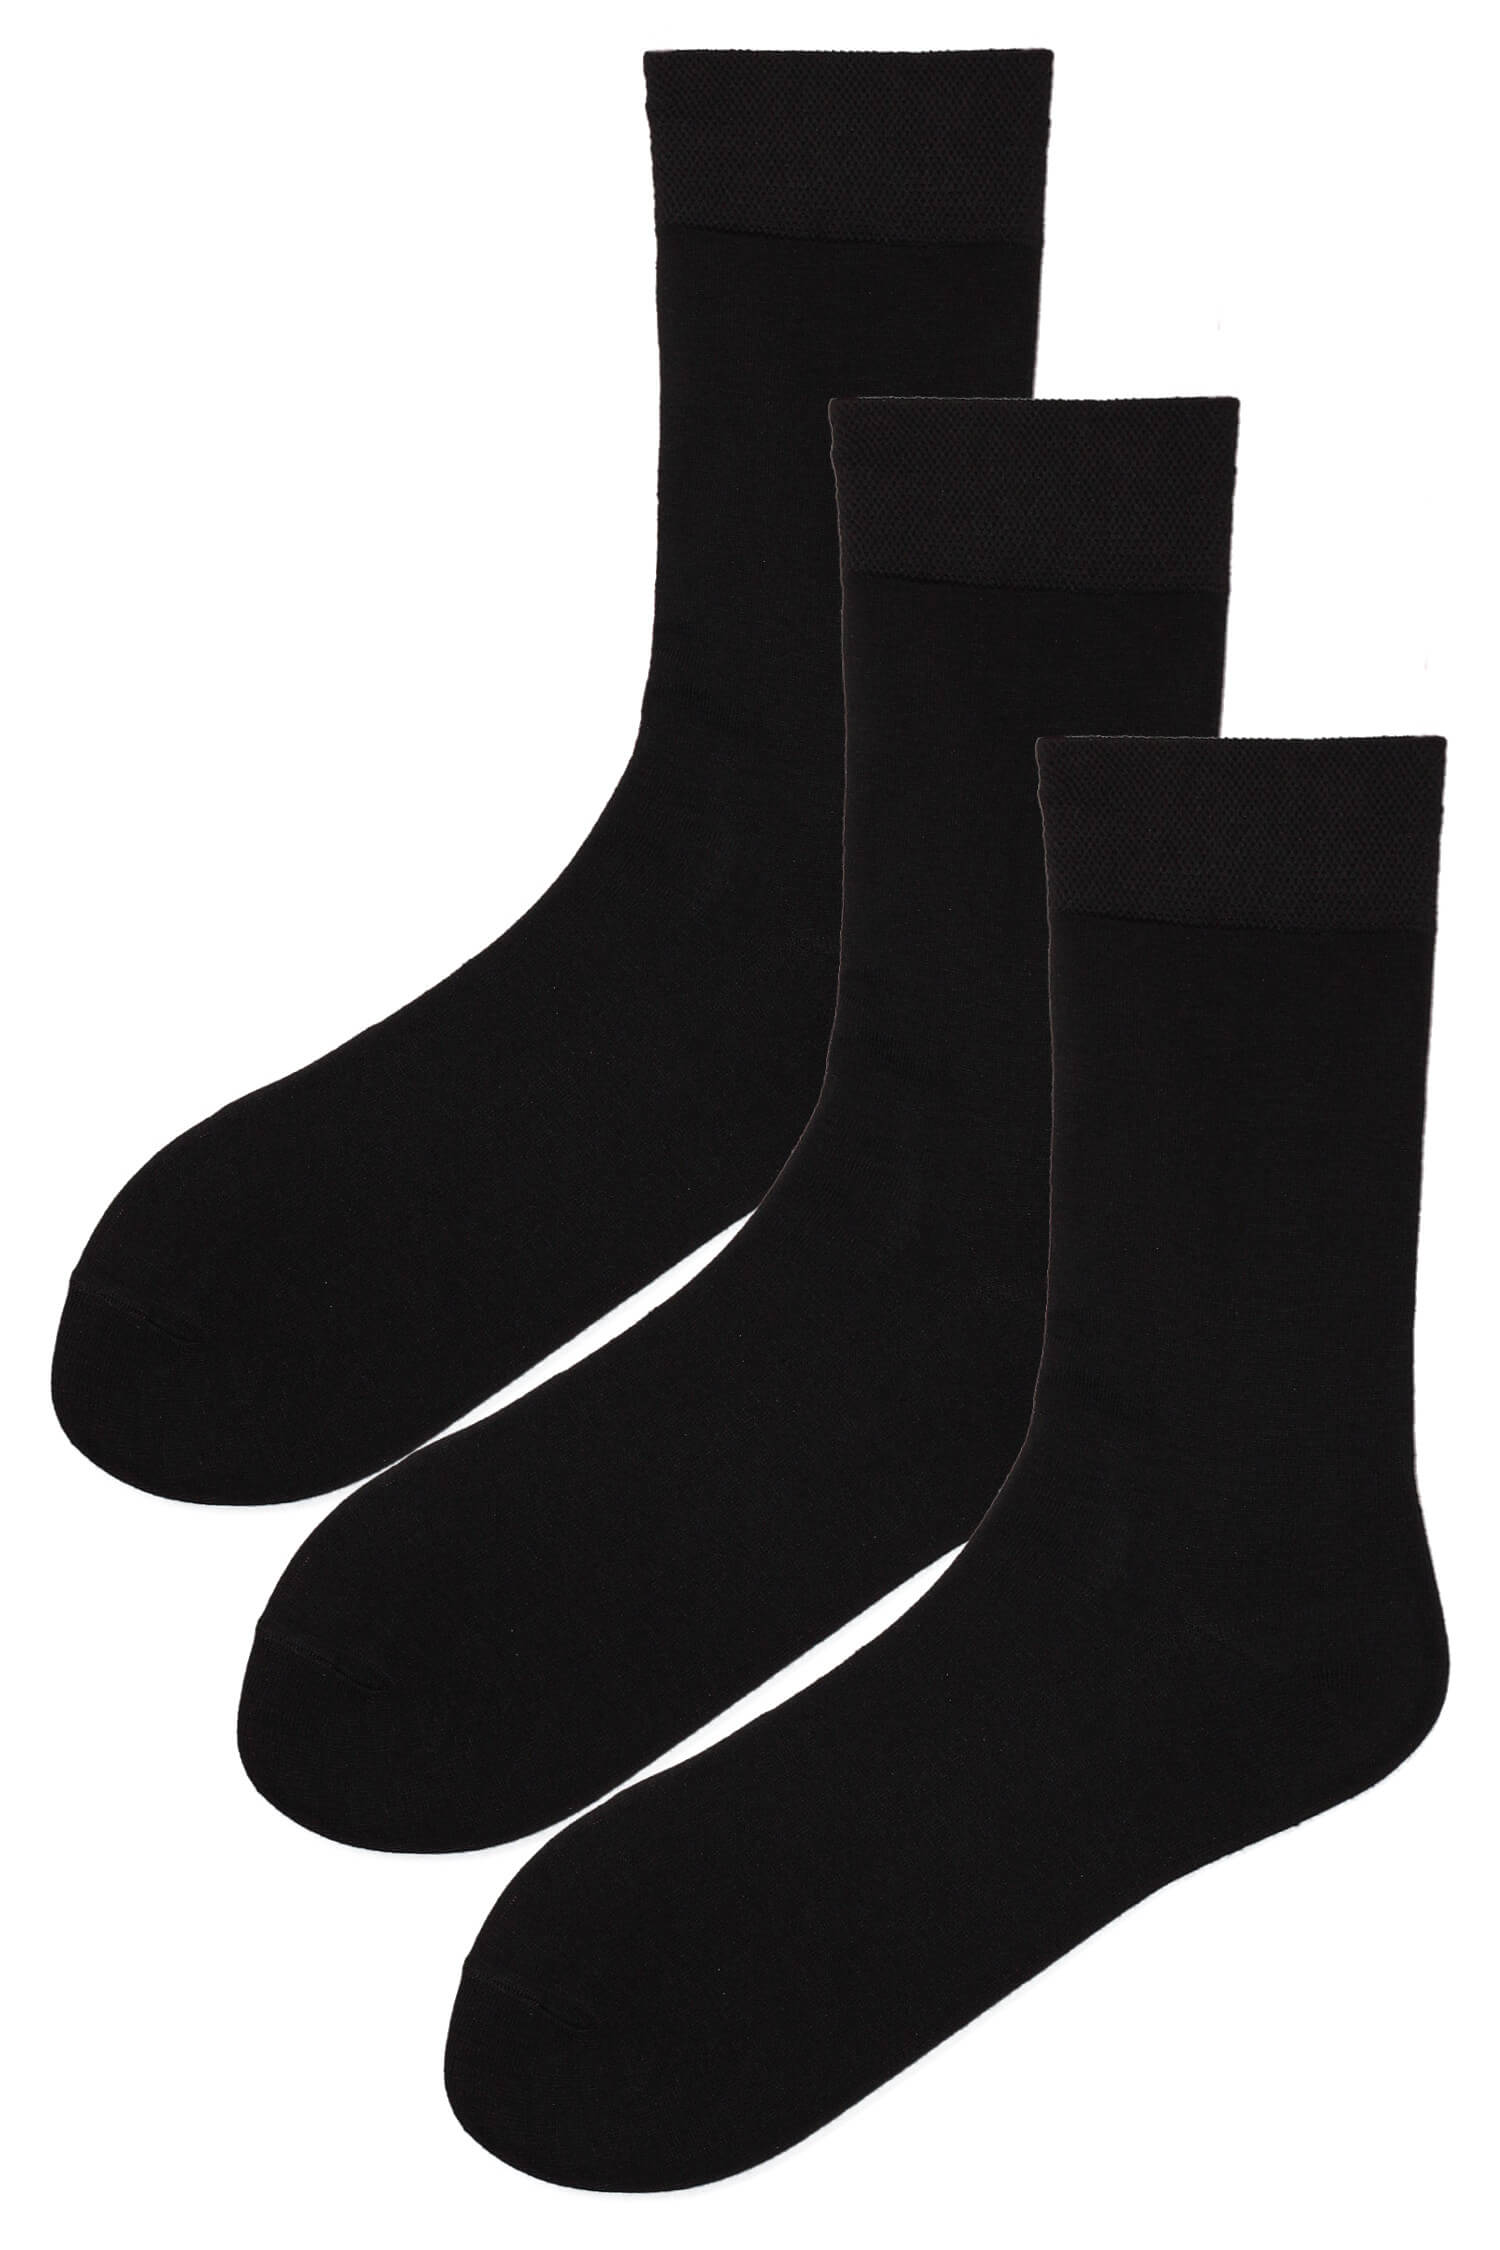 Pánské klasické ponožky bambus S230C - 3 páry 40-44 černá